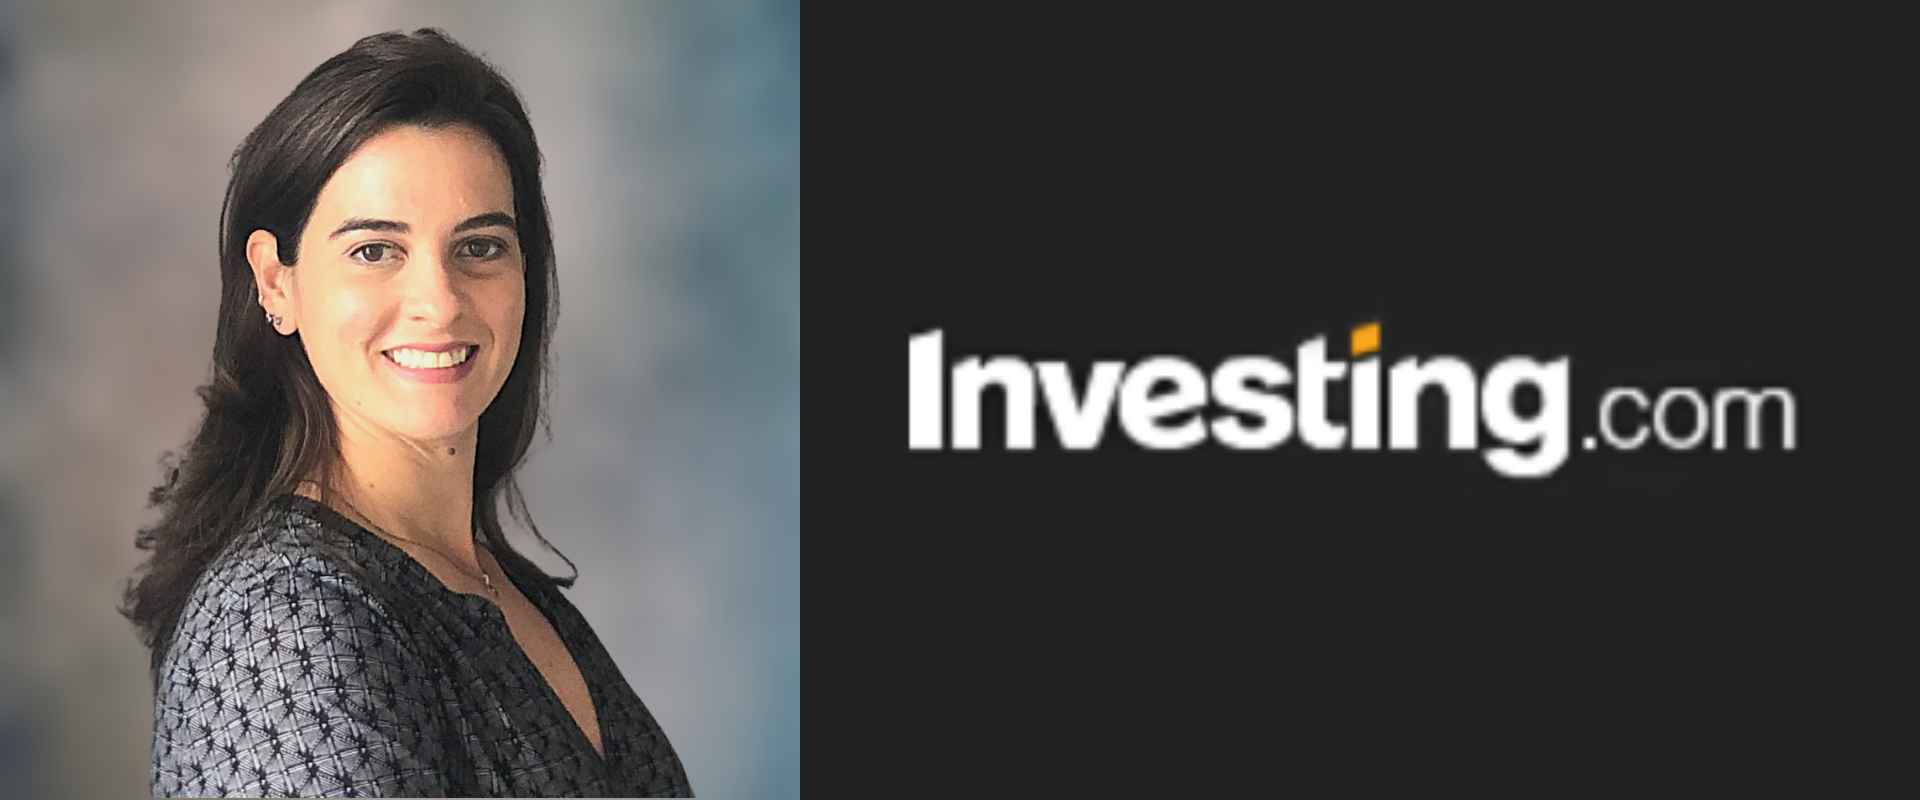 Em contribuição ao Investing.com, a Profª Liliane Furtado comenta sobre o gap de gênero em cargos de liderança nas empresas listadas na B3.